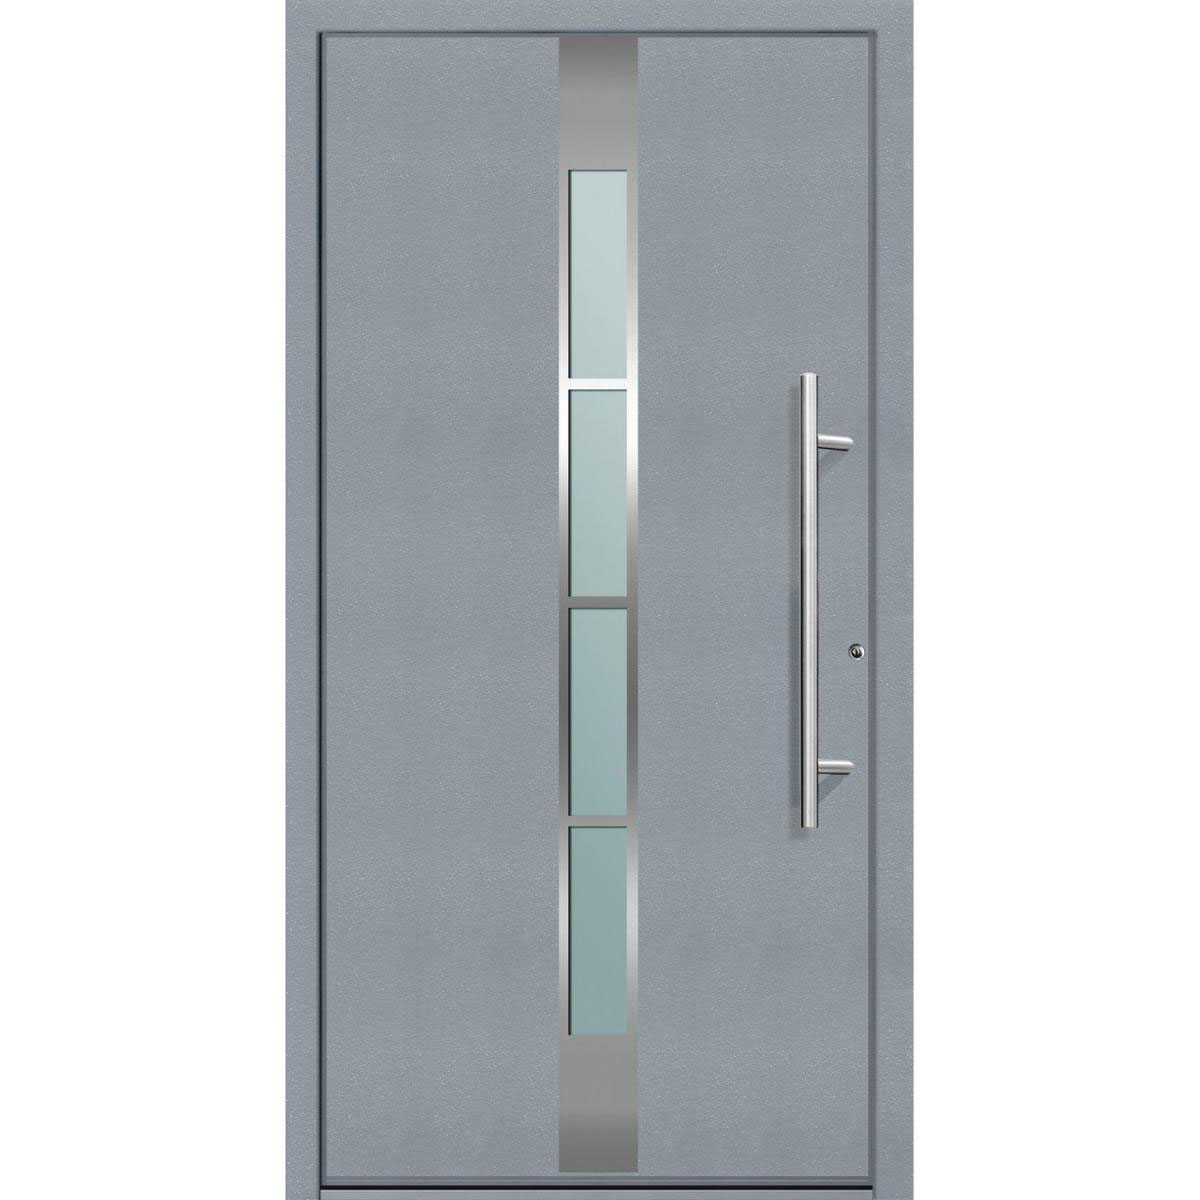 Aluminium Sicherheits-Haustür „Ferrara Superior“, 60mm, grau, 100x210 cm, Anschlag rechts, inkl. Griffset